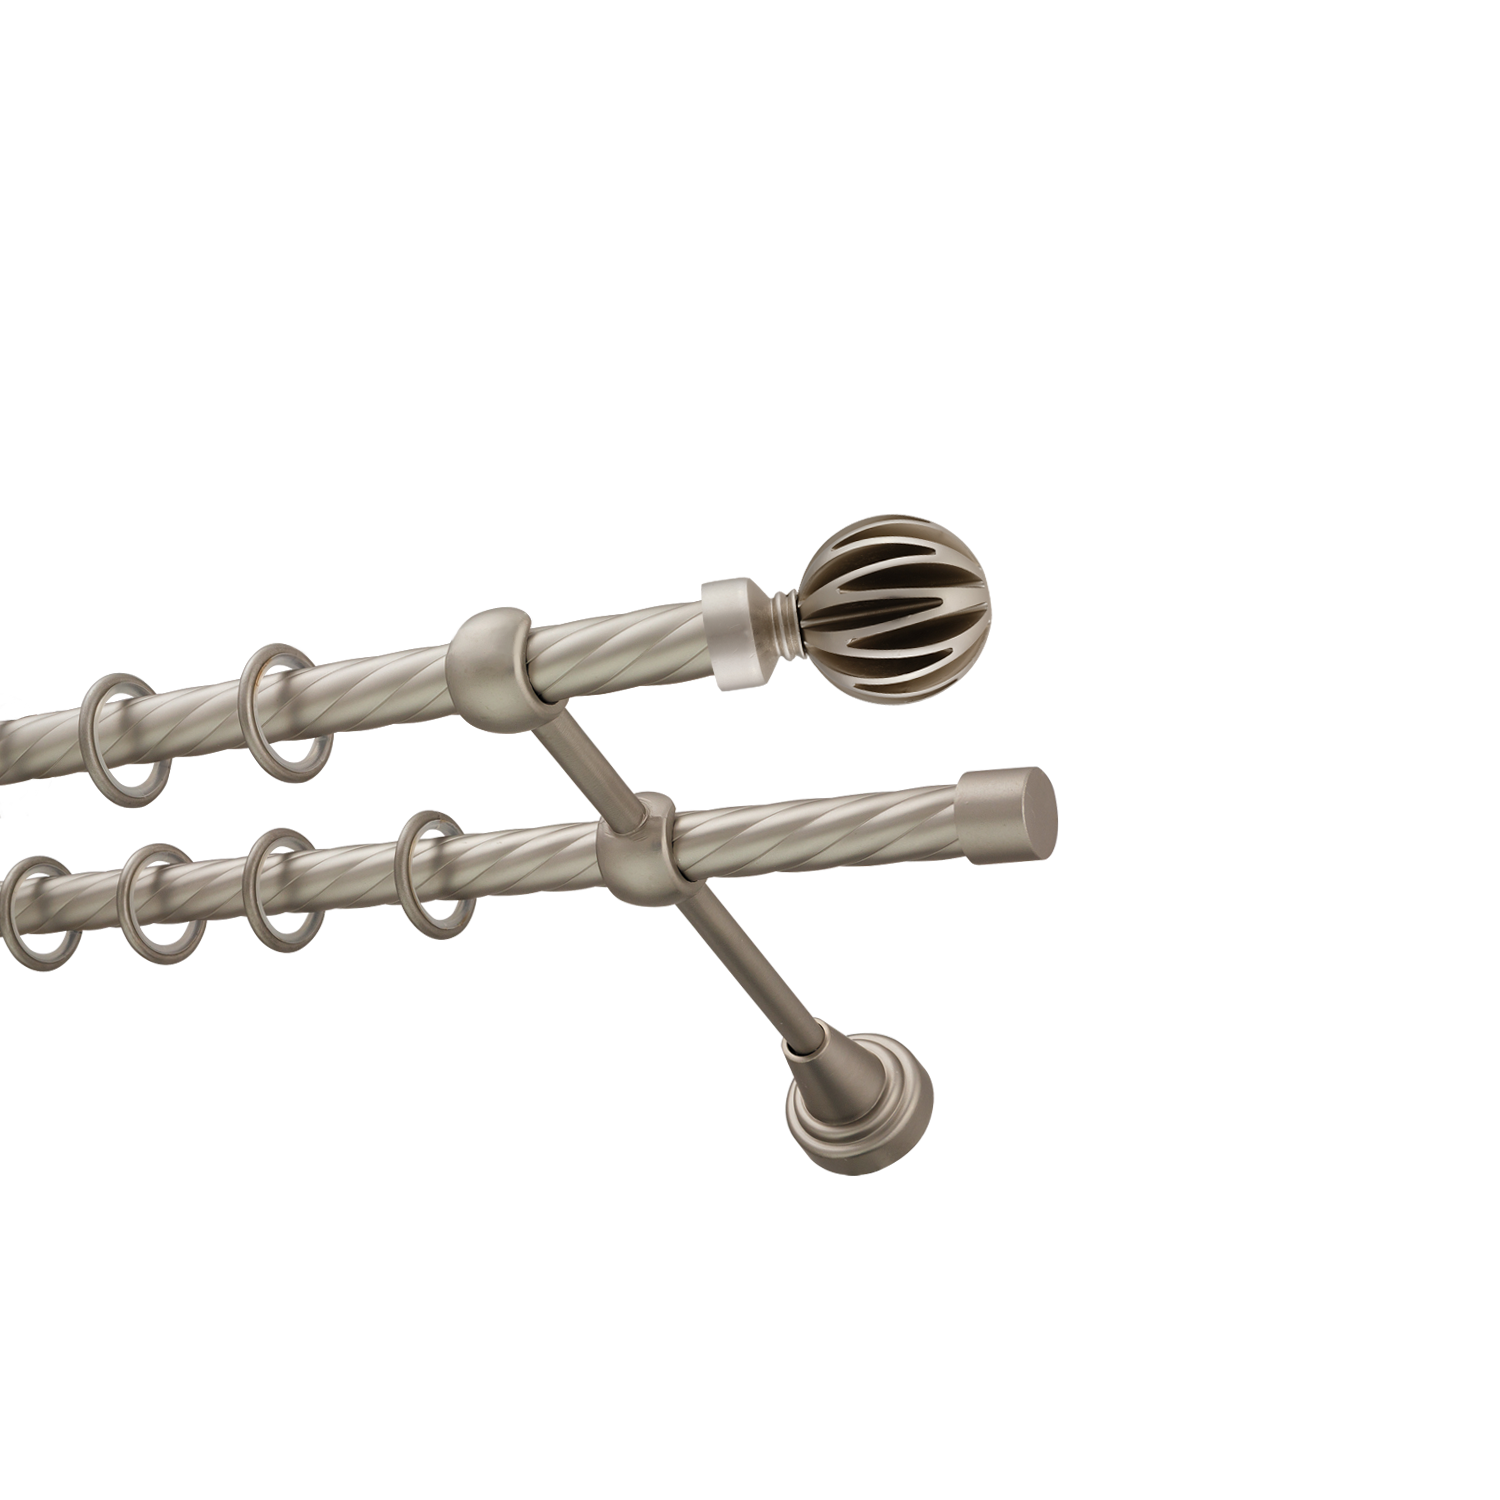 Металлический карниз для штор Шафран, двухрядный 16/16 мм, сталь, витая штанга, длина 160 см - фото Wikidecor.ru